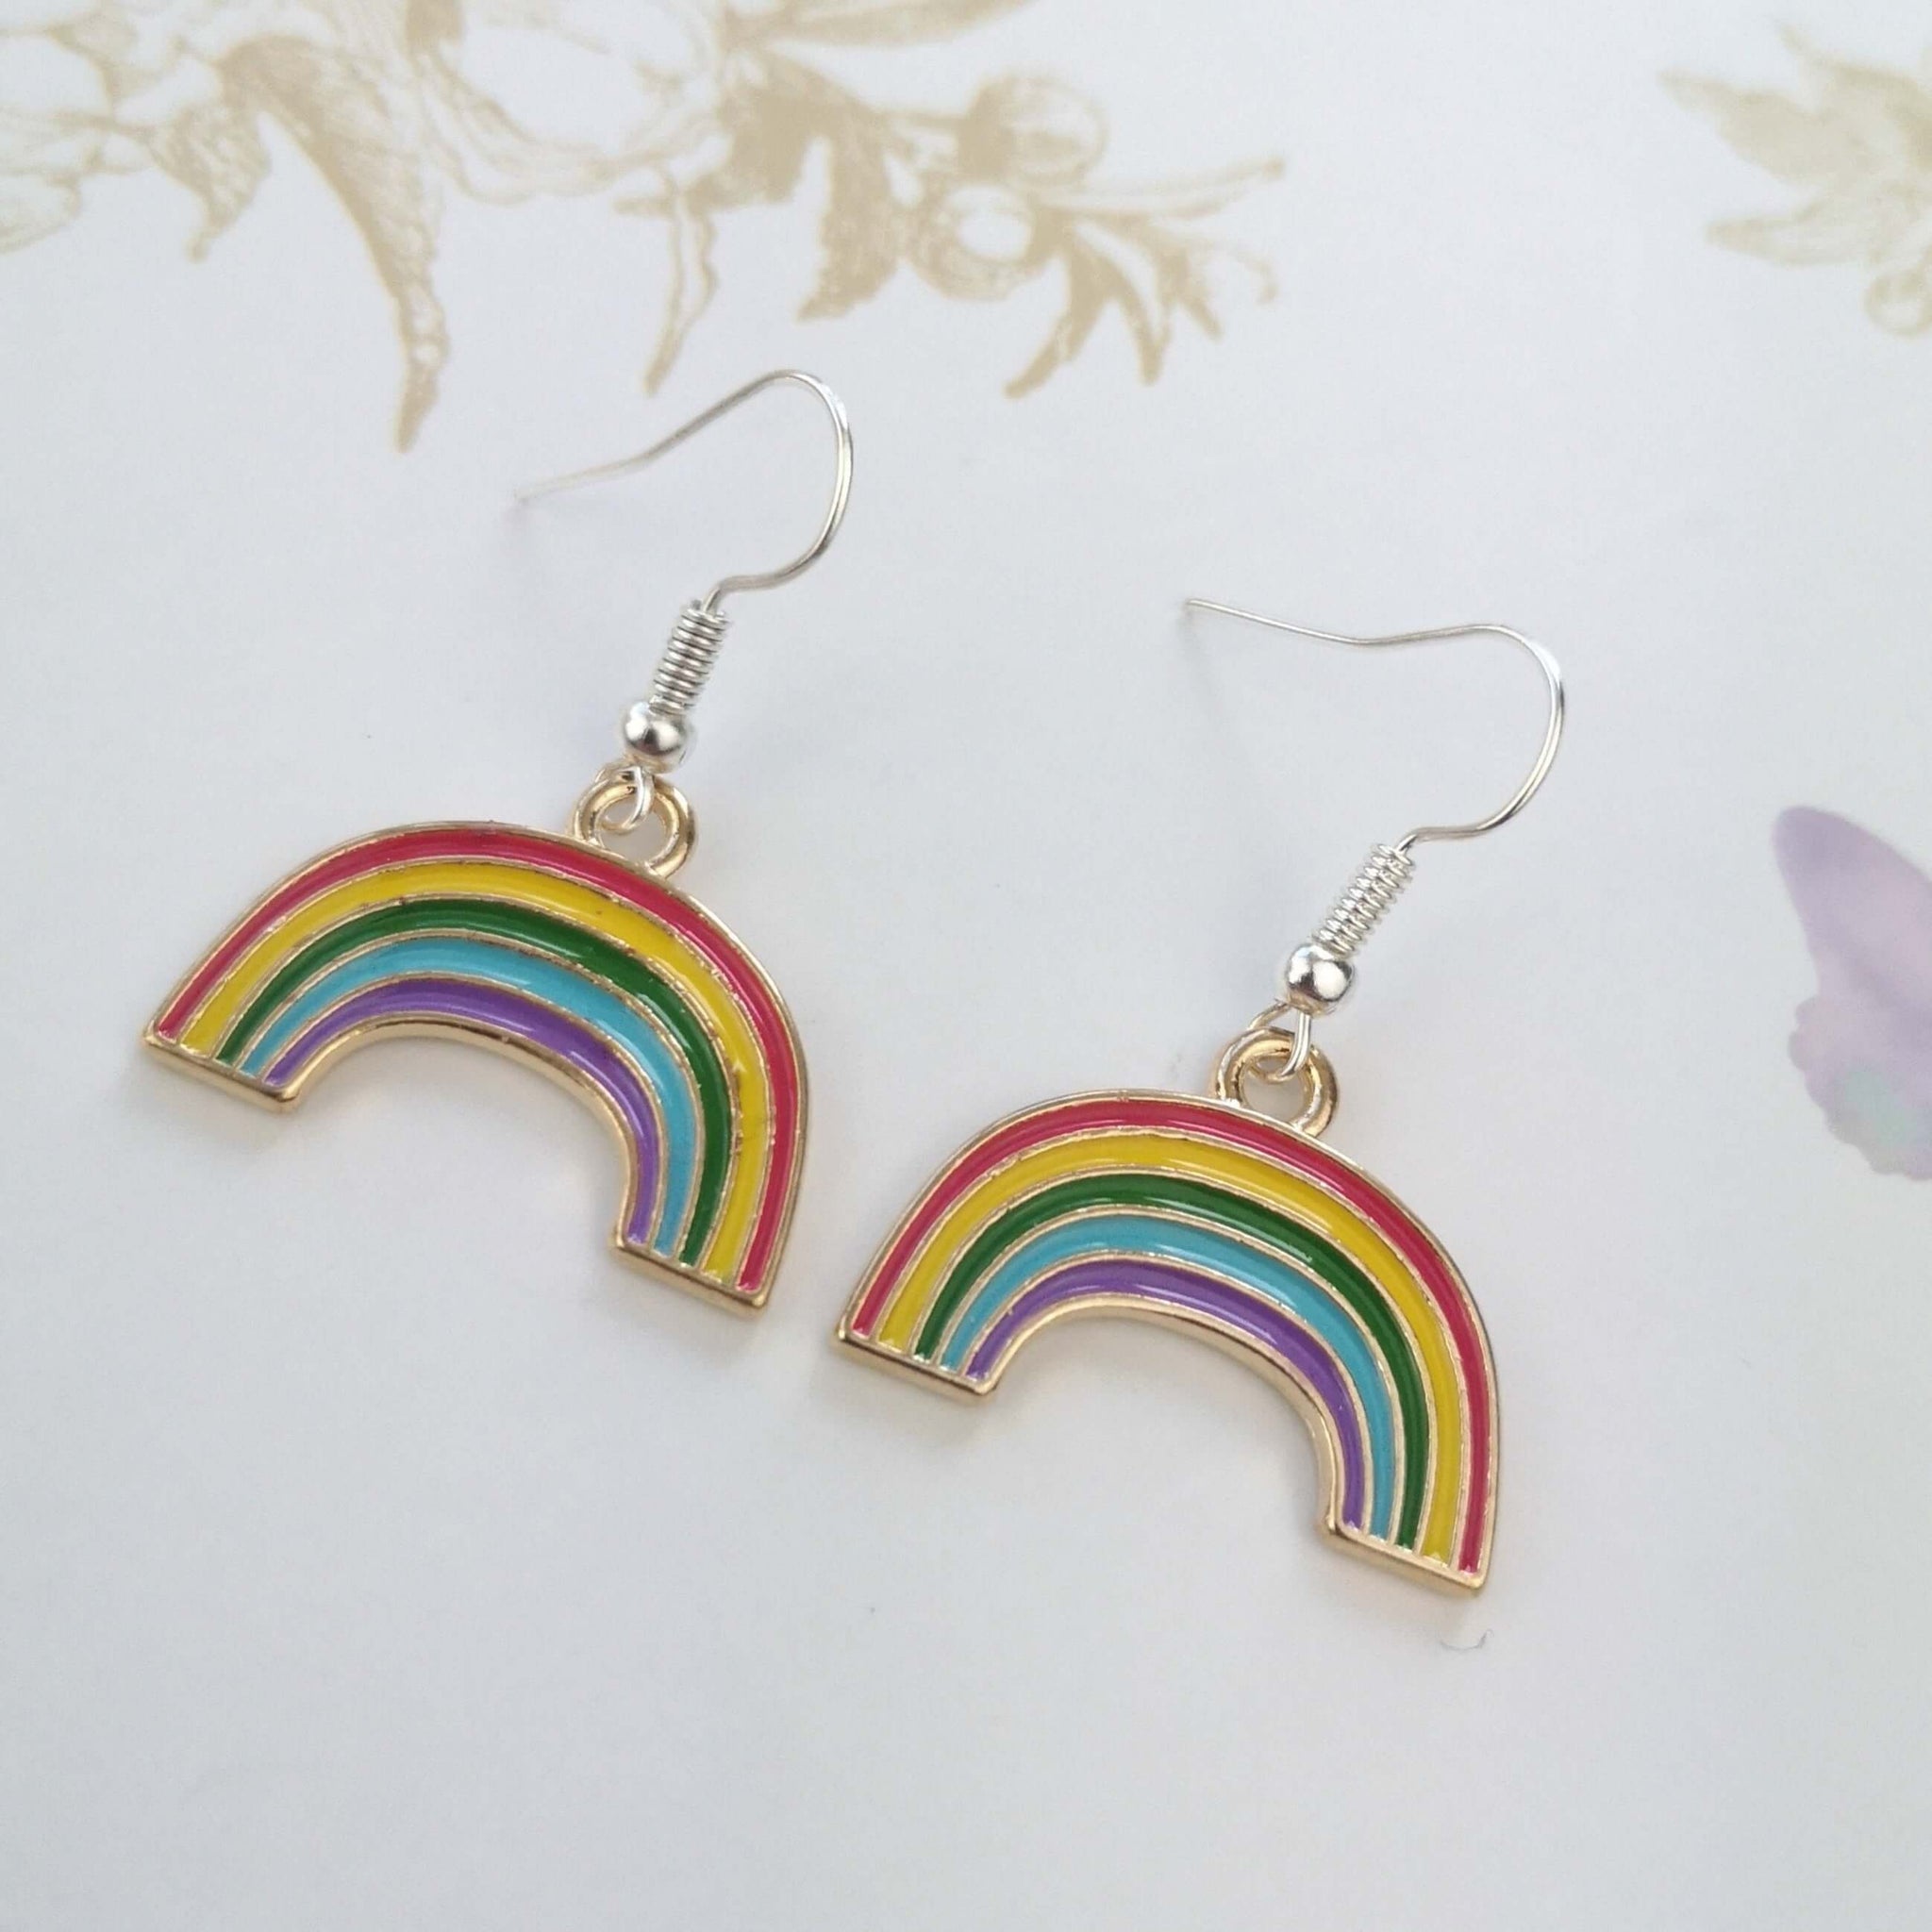 Rainbow drop dangle earrings